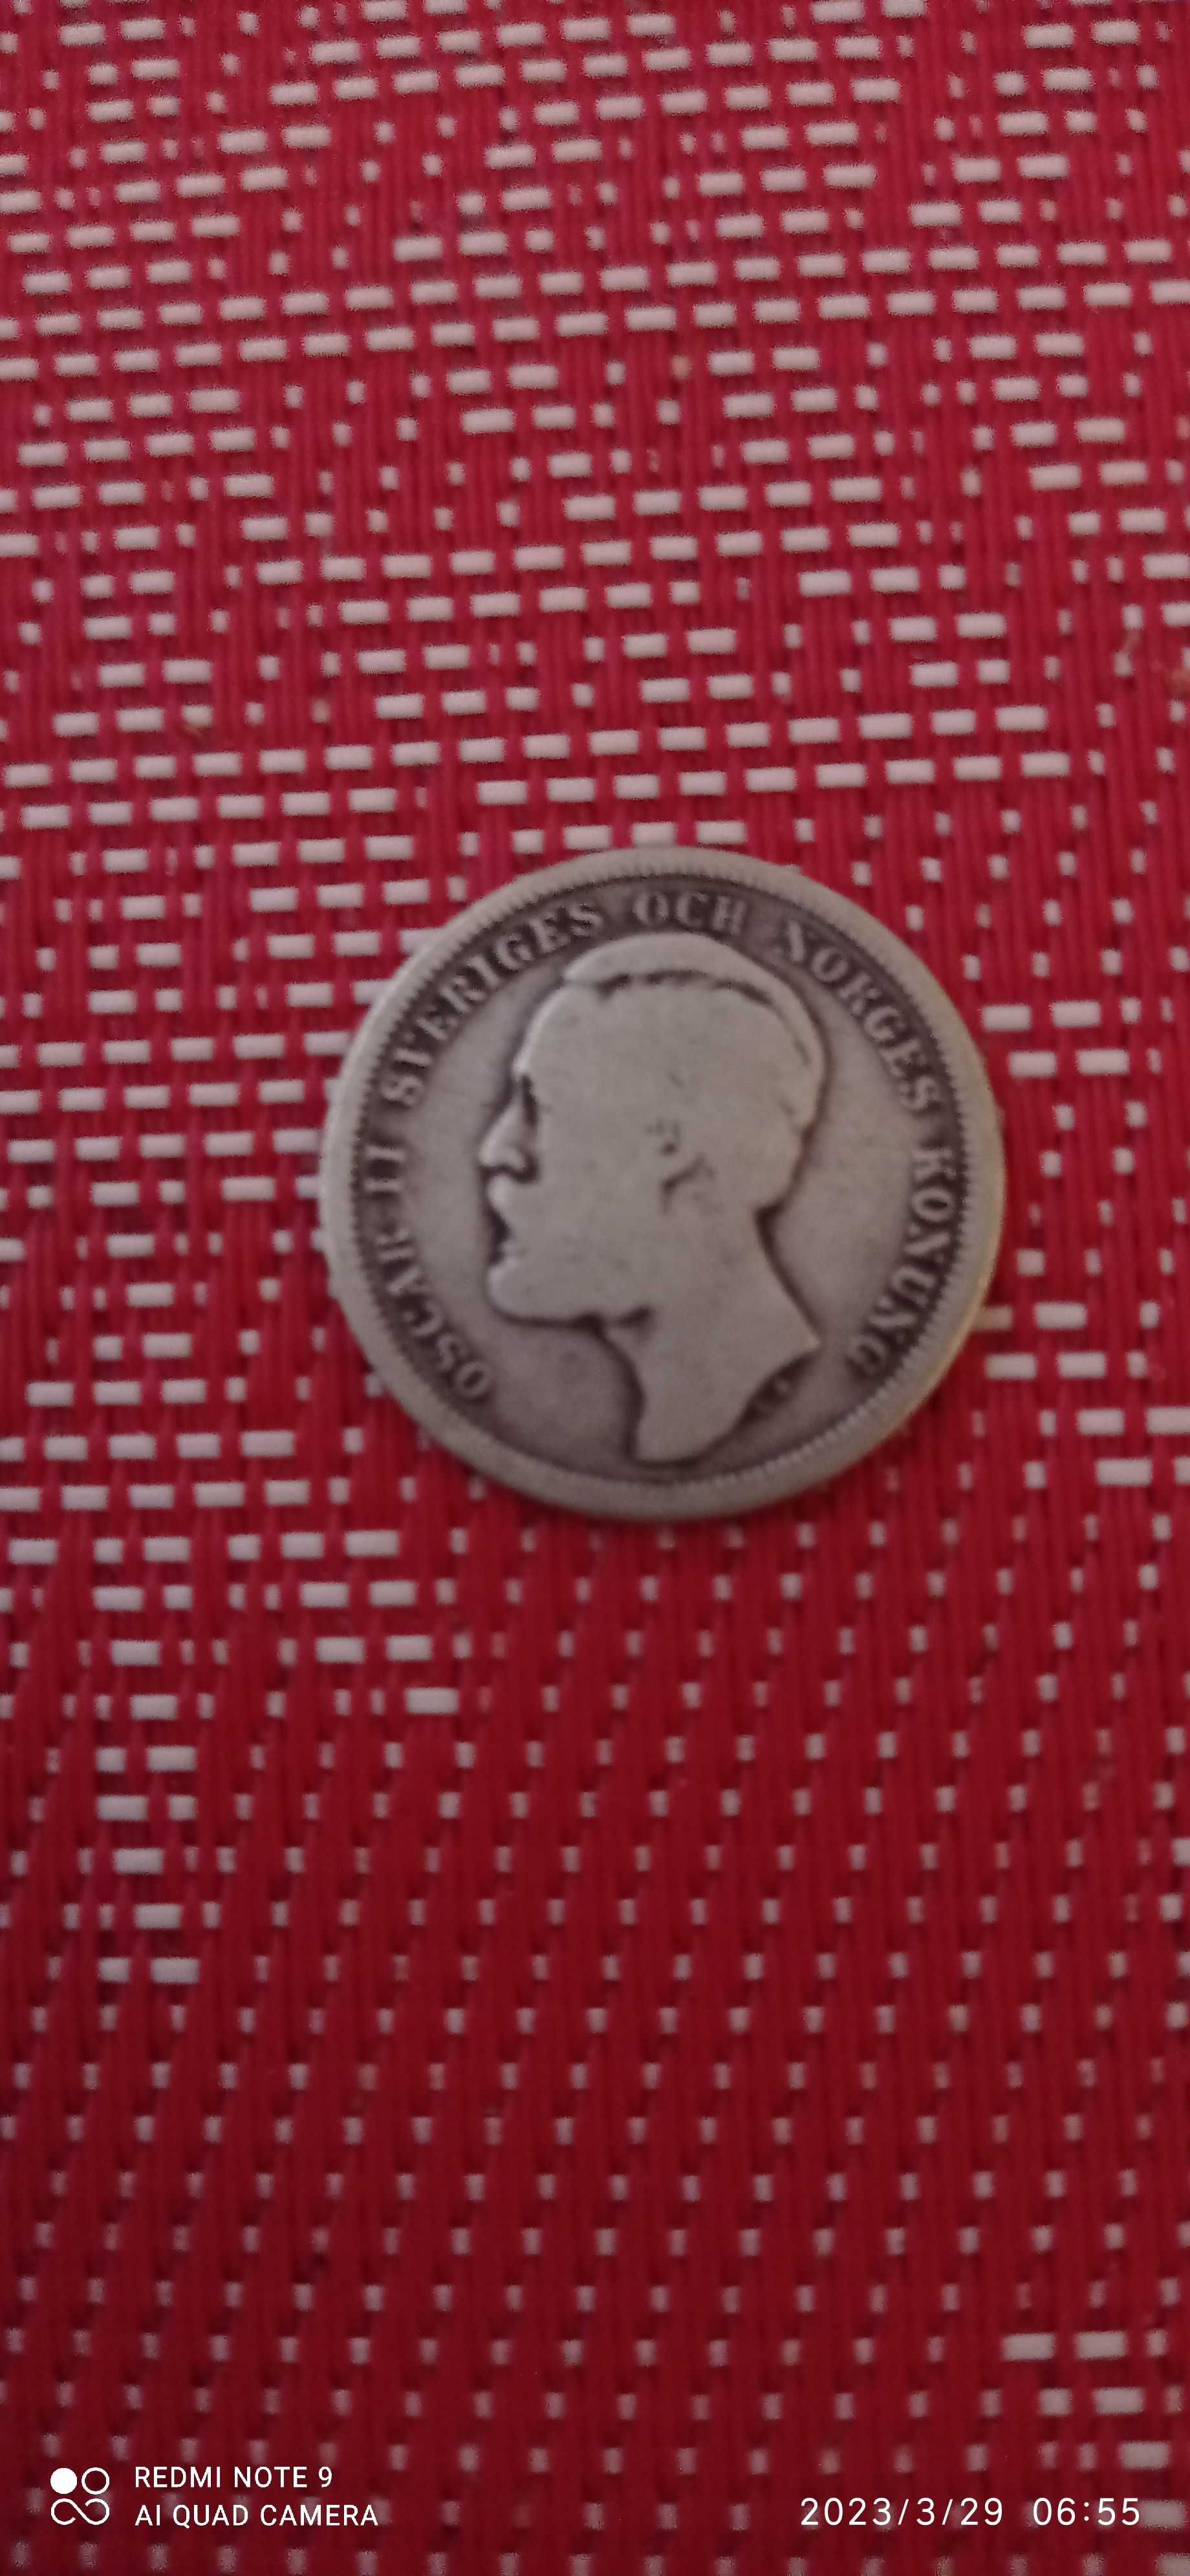 Stare szwedzkie monety